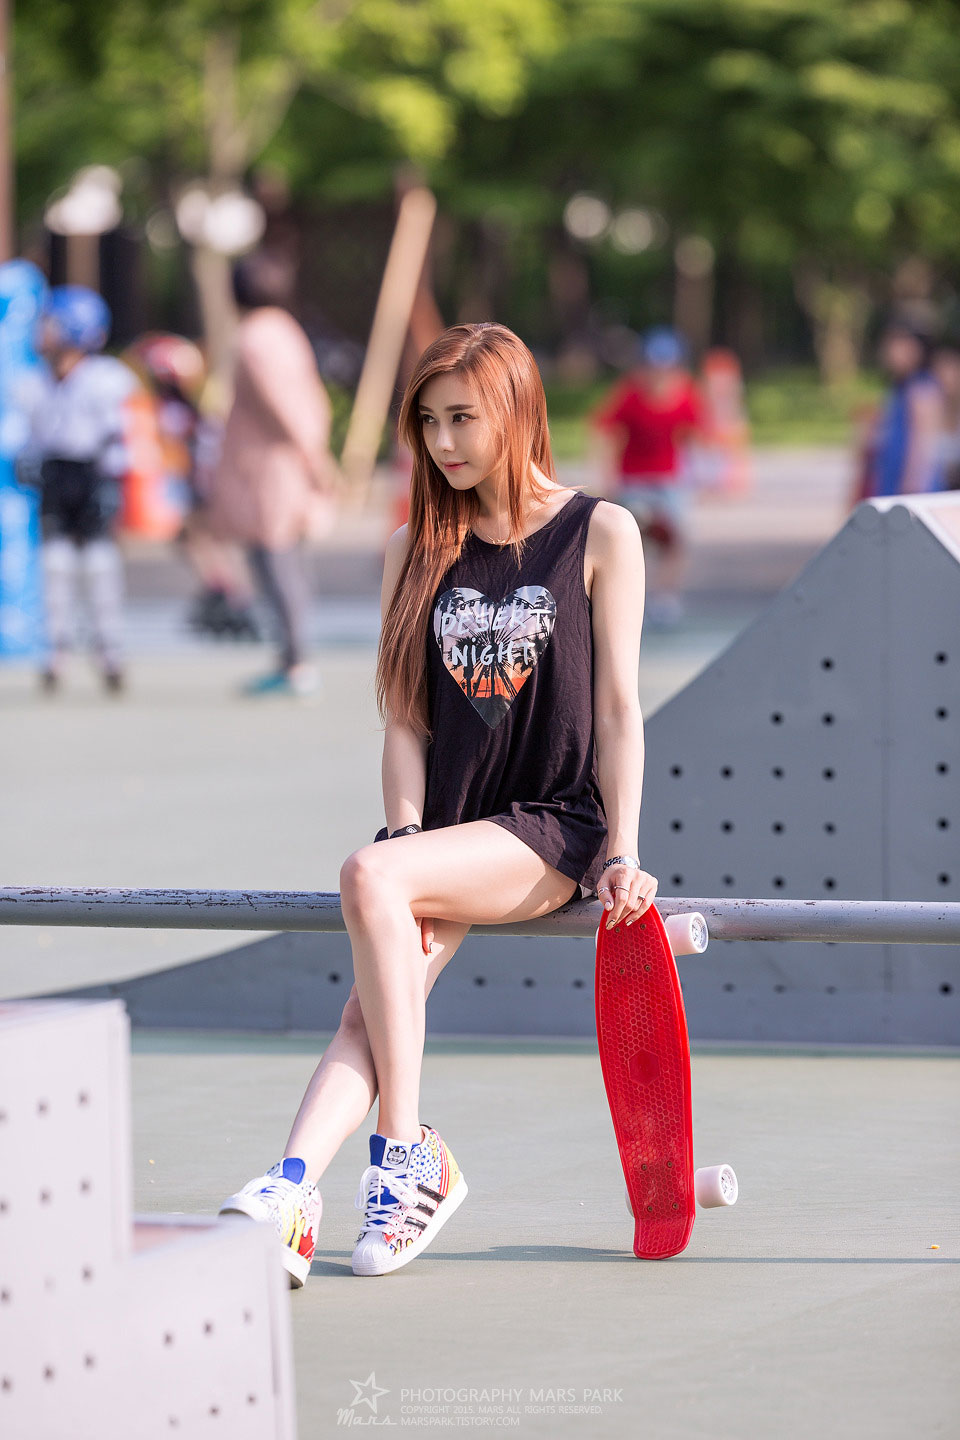 Korean model Kim Ha Yul skatepark photoshoot